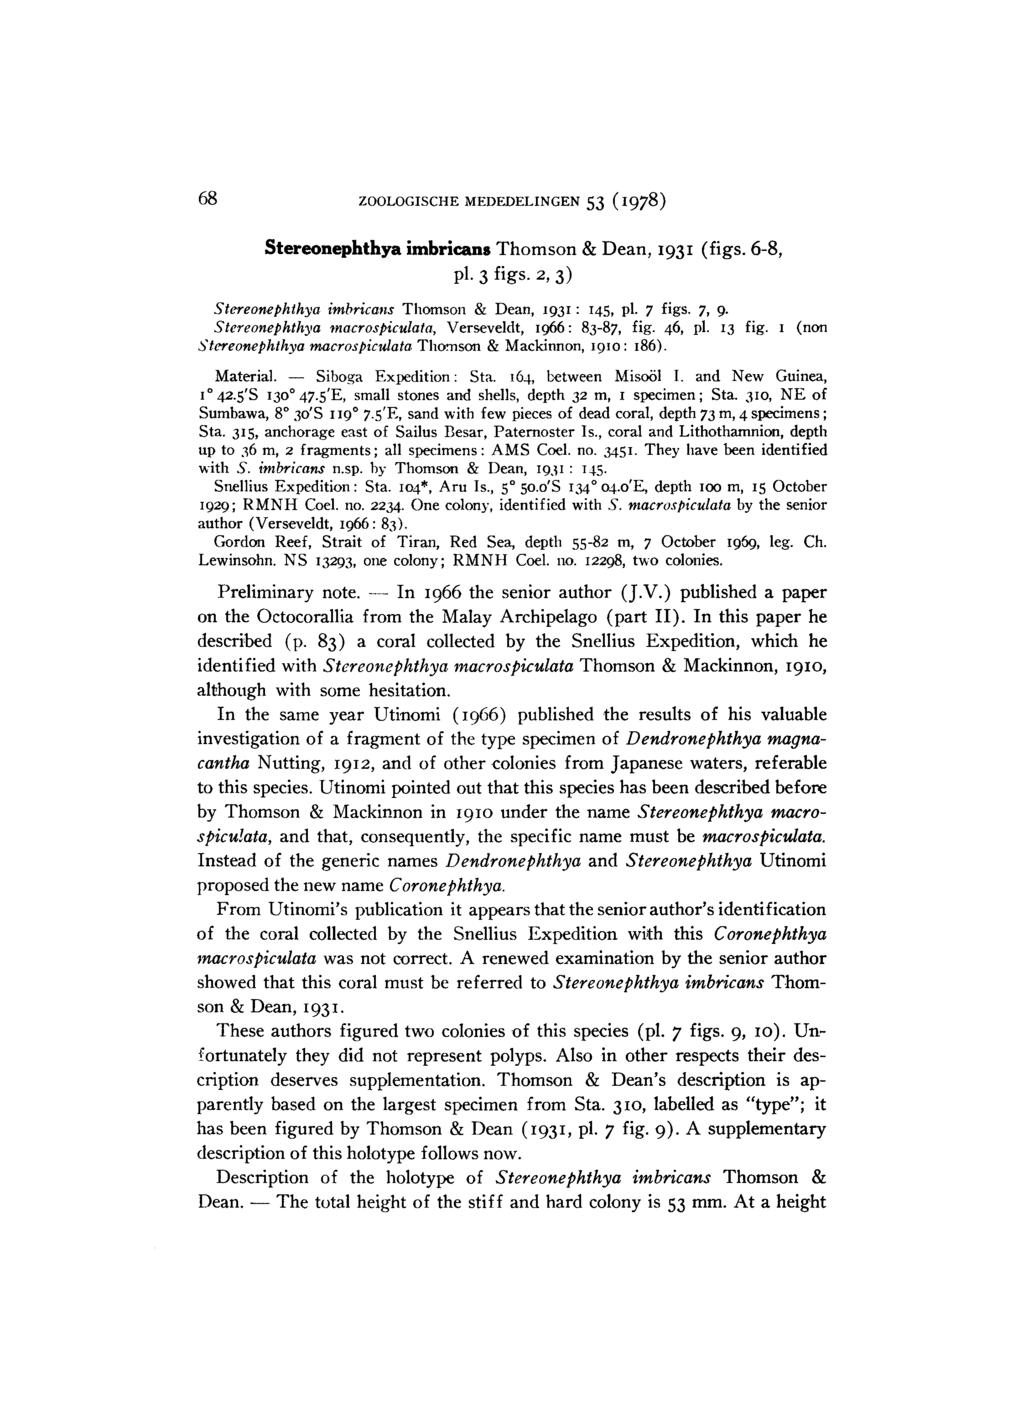 69 ZOOLOGISCHE MEDEDELINGEN 53 (1978) Stereonephthya imbricans Thomson & Dean, 1931 (figs. 6-8, pl. 3 figs. 2, 3) Stereonephthya imbricans Thomson & Dean, 1931: 145, pl. 7 figs. 7, 9.